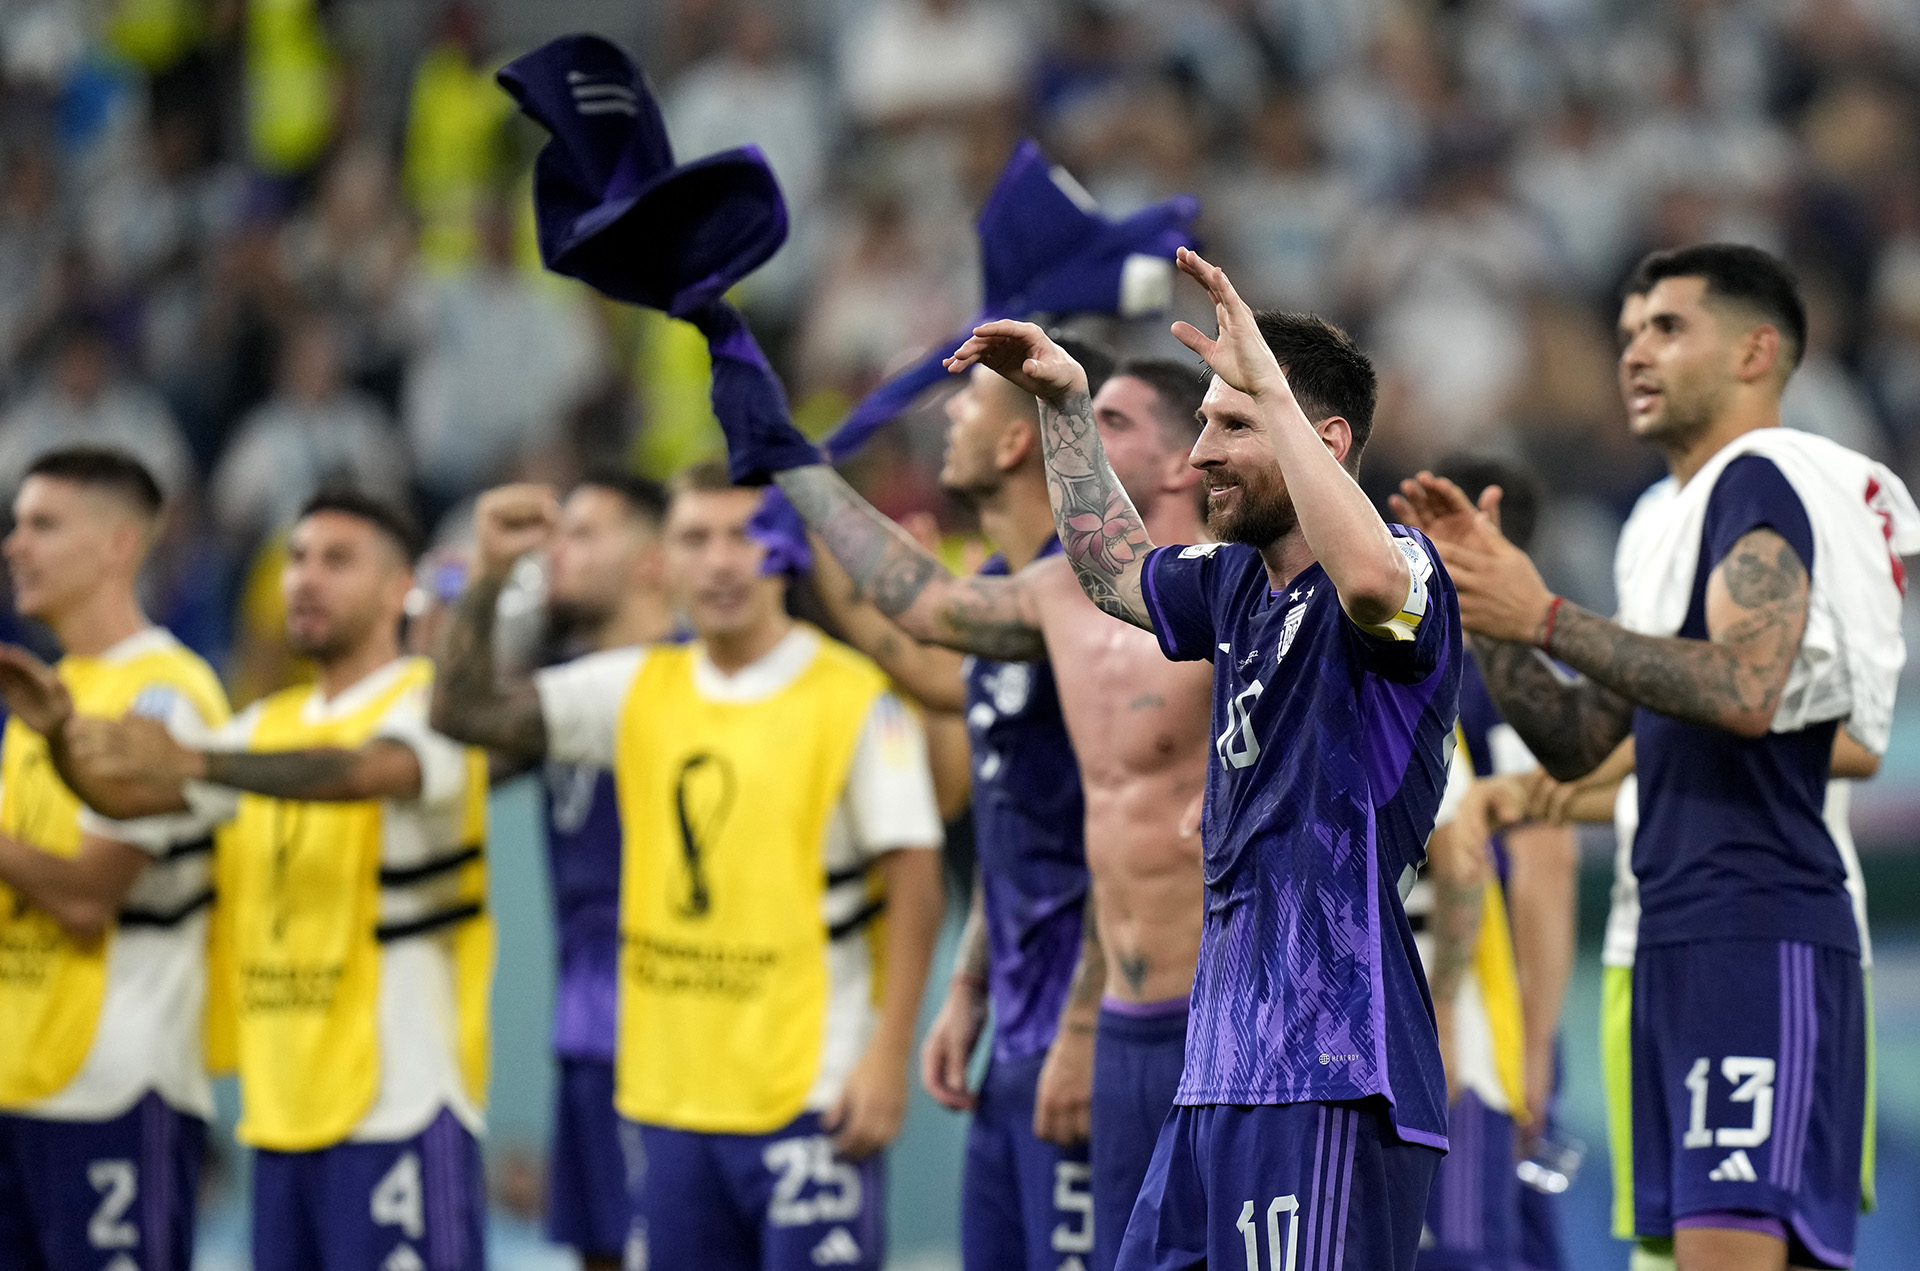 Lionel Messi z Argentyny z kolegami z drużyny na koniec meczu Mistrzostw Świata w piłce nożnej grupy C pomiędzy Polską a Argentyną na stadionie 974 w Doha, Katar, środa, 30 listopada 2022 r. (AP Photo/Darko Bandic)